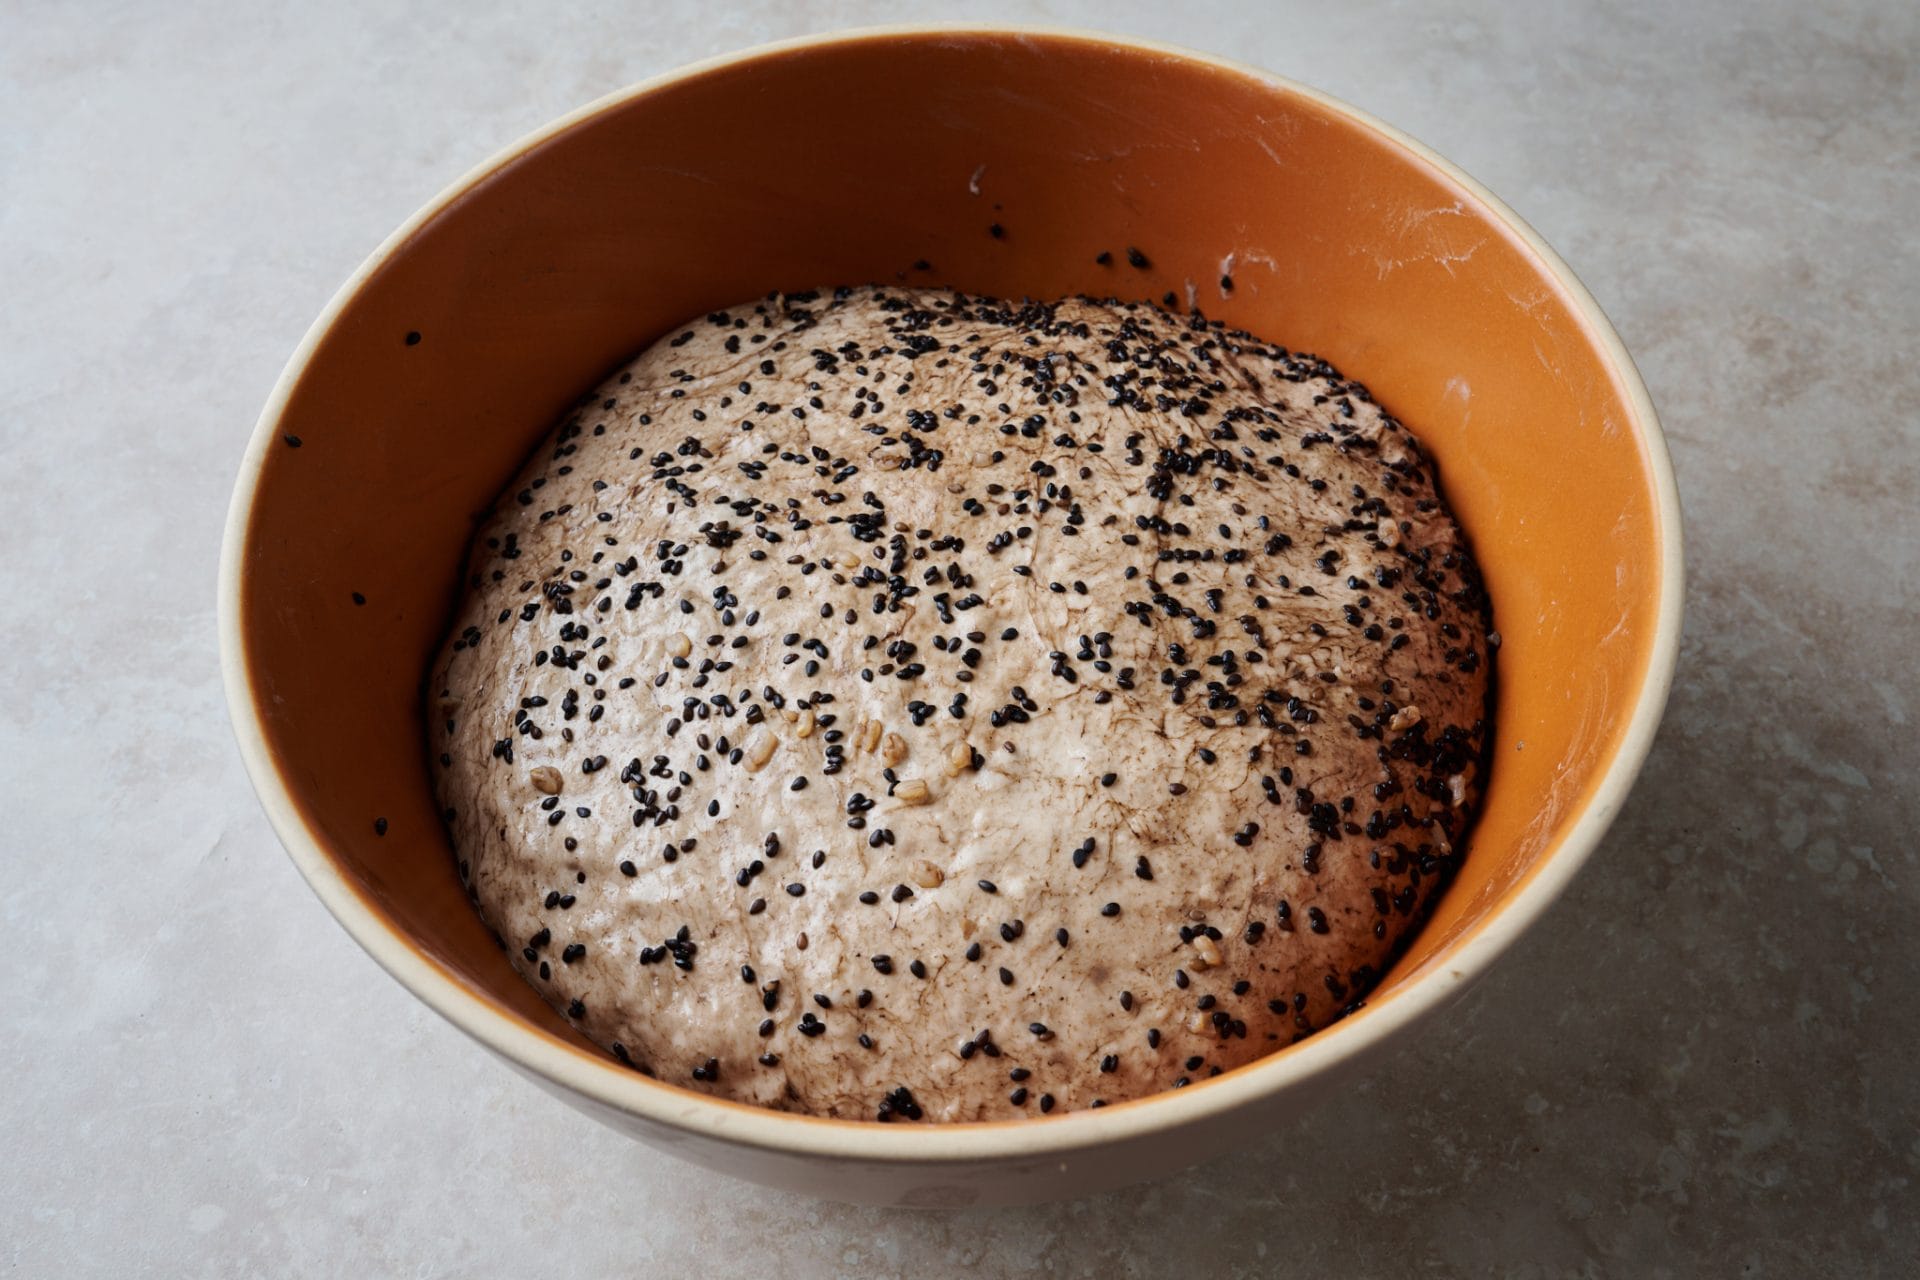 Masa con complementos de sésamo y arroz integral añadidos